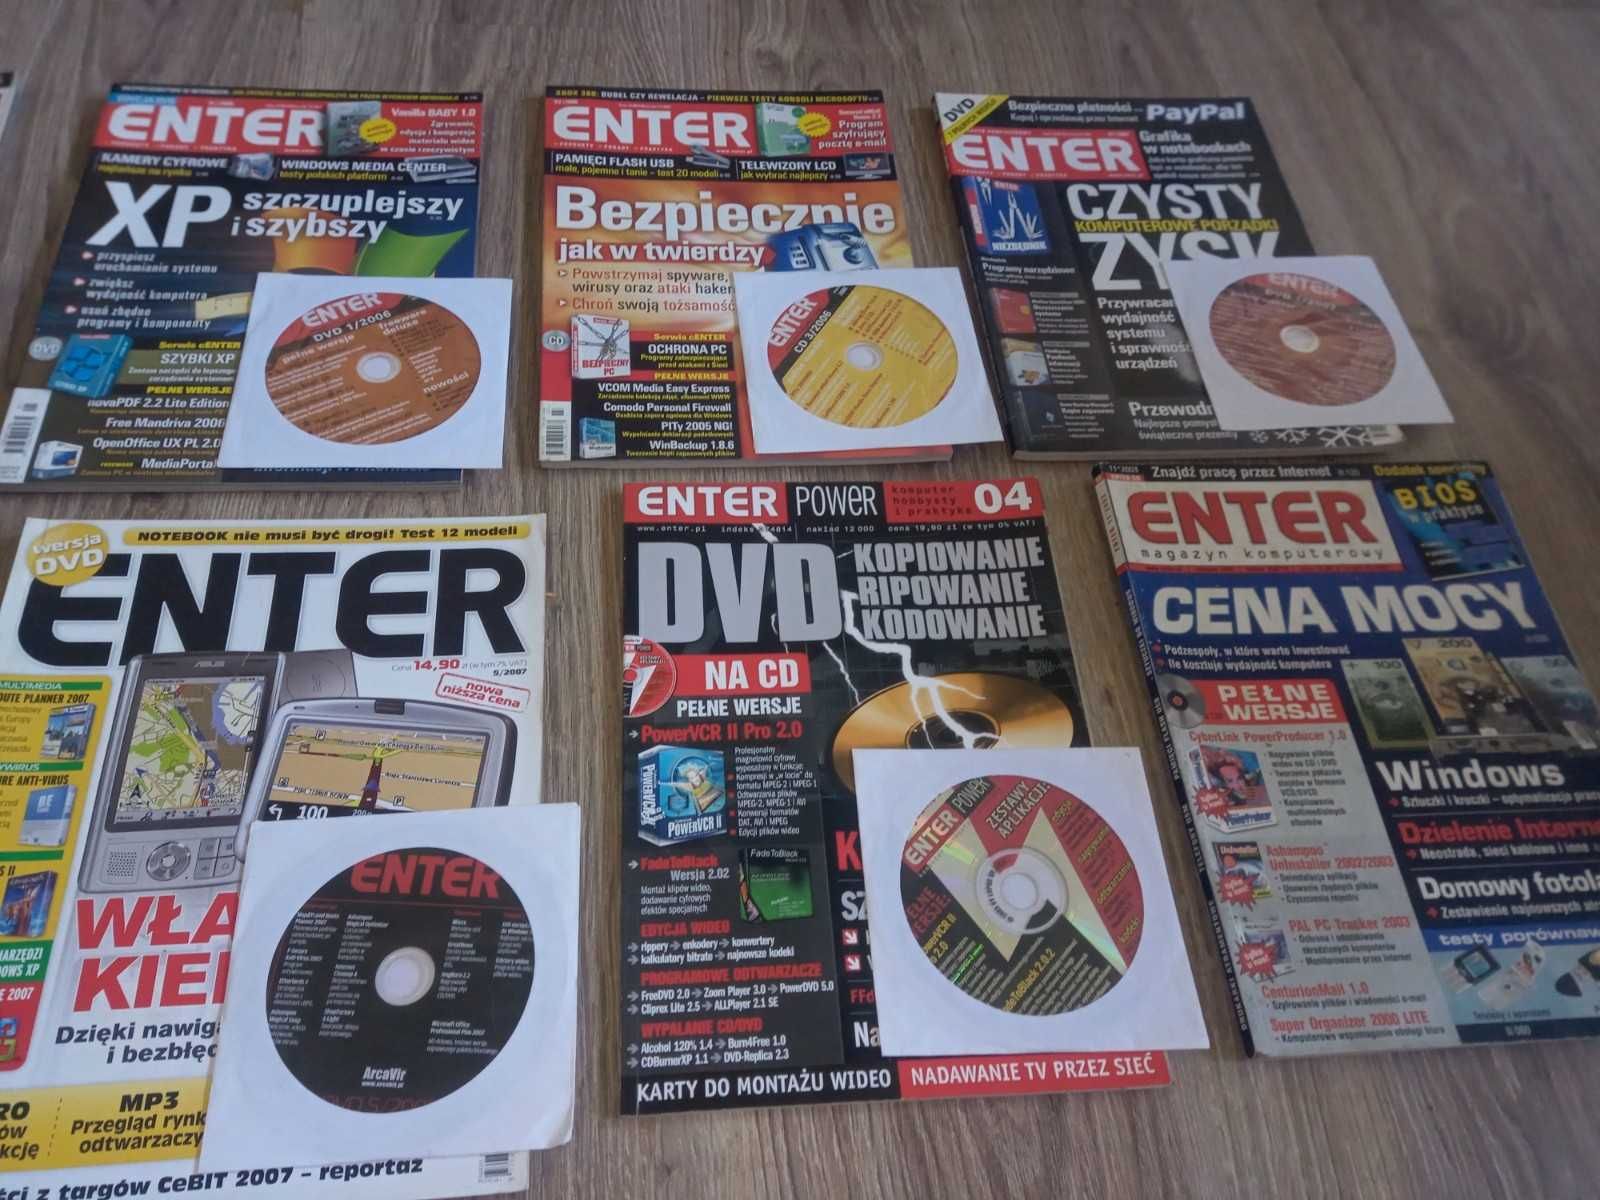 ENTER - czasopismo 10 numerów archiwalnych + DVD WYSYŁKA 1zł